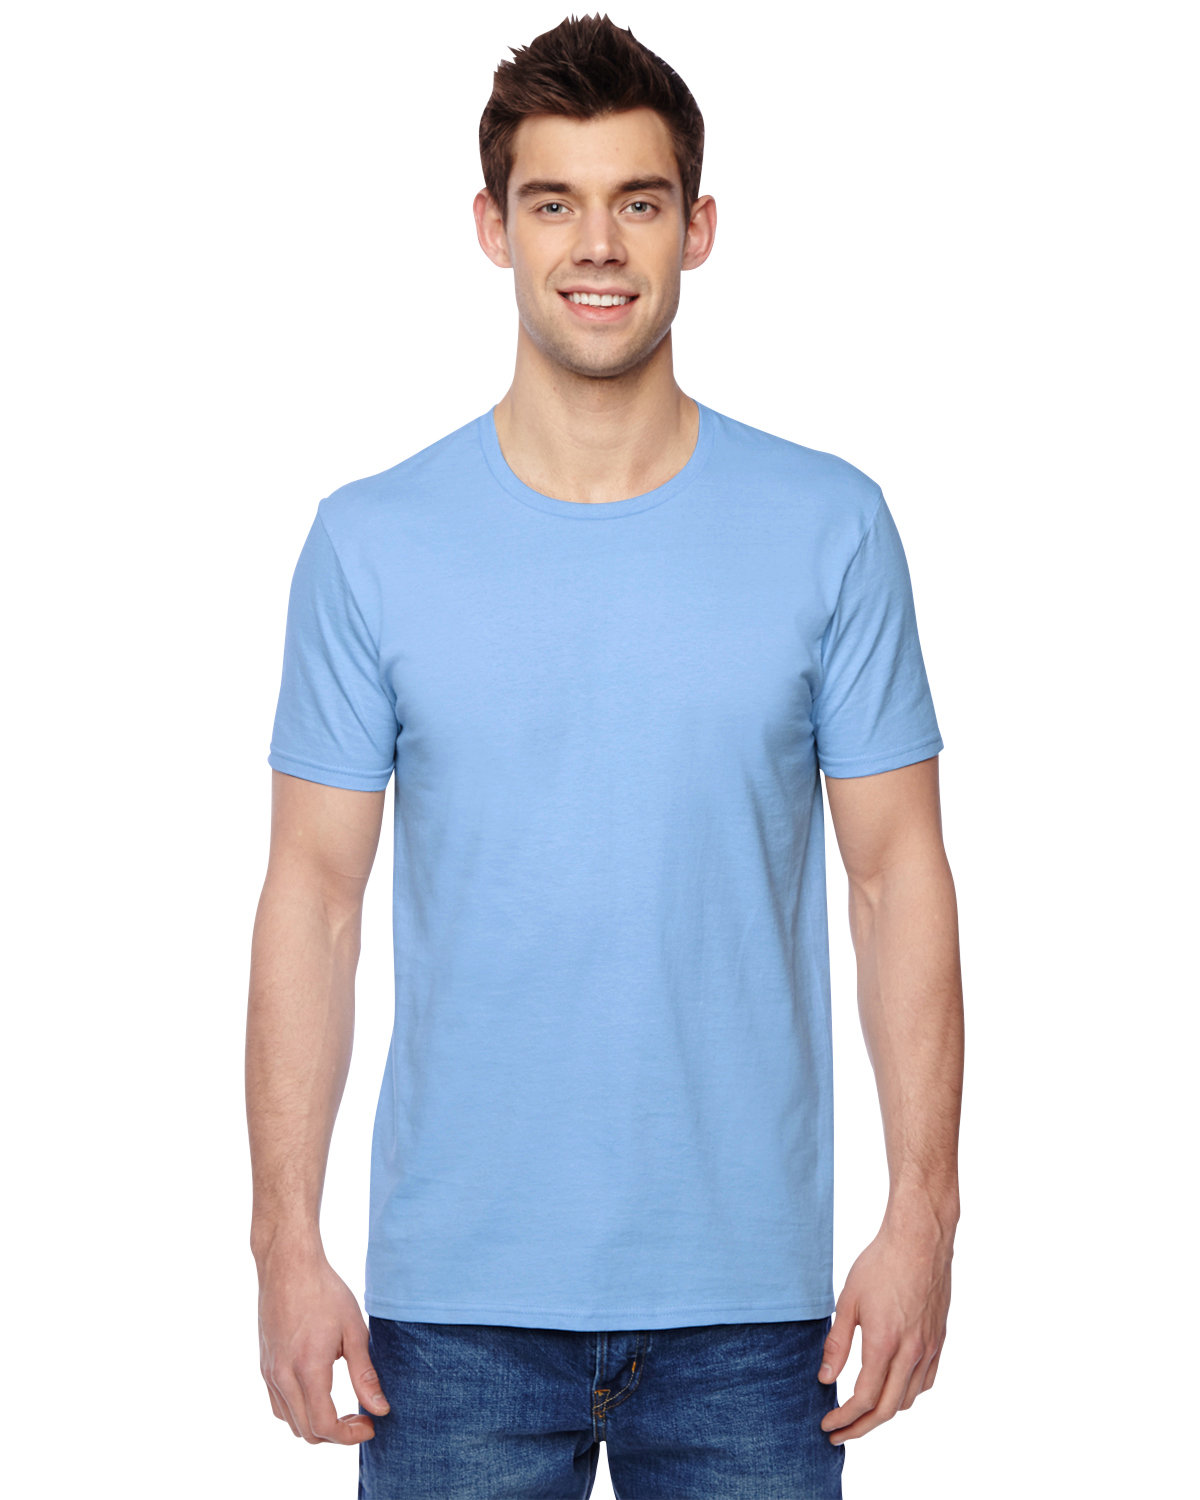 Fruit of the Loom Adult Sofspun® Jersey Crew T-Shirt LIGHT BLUE 